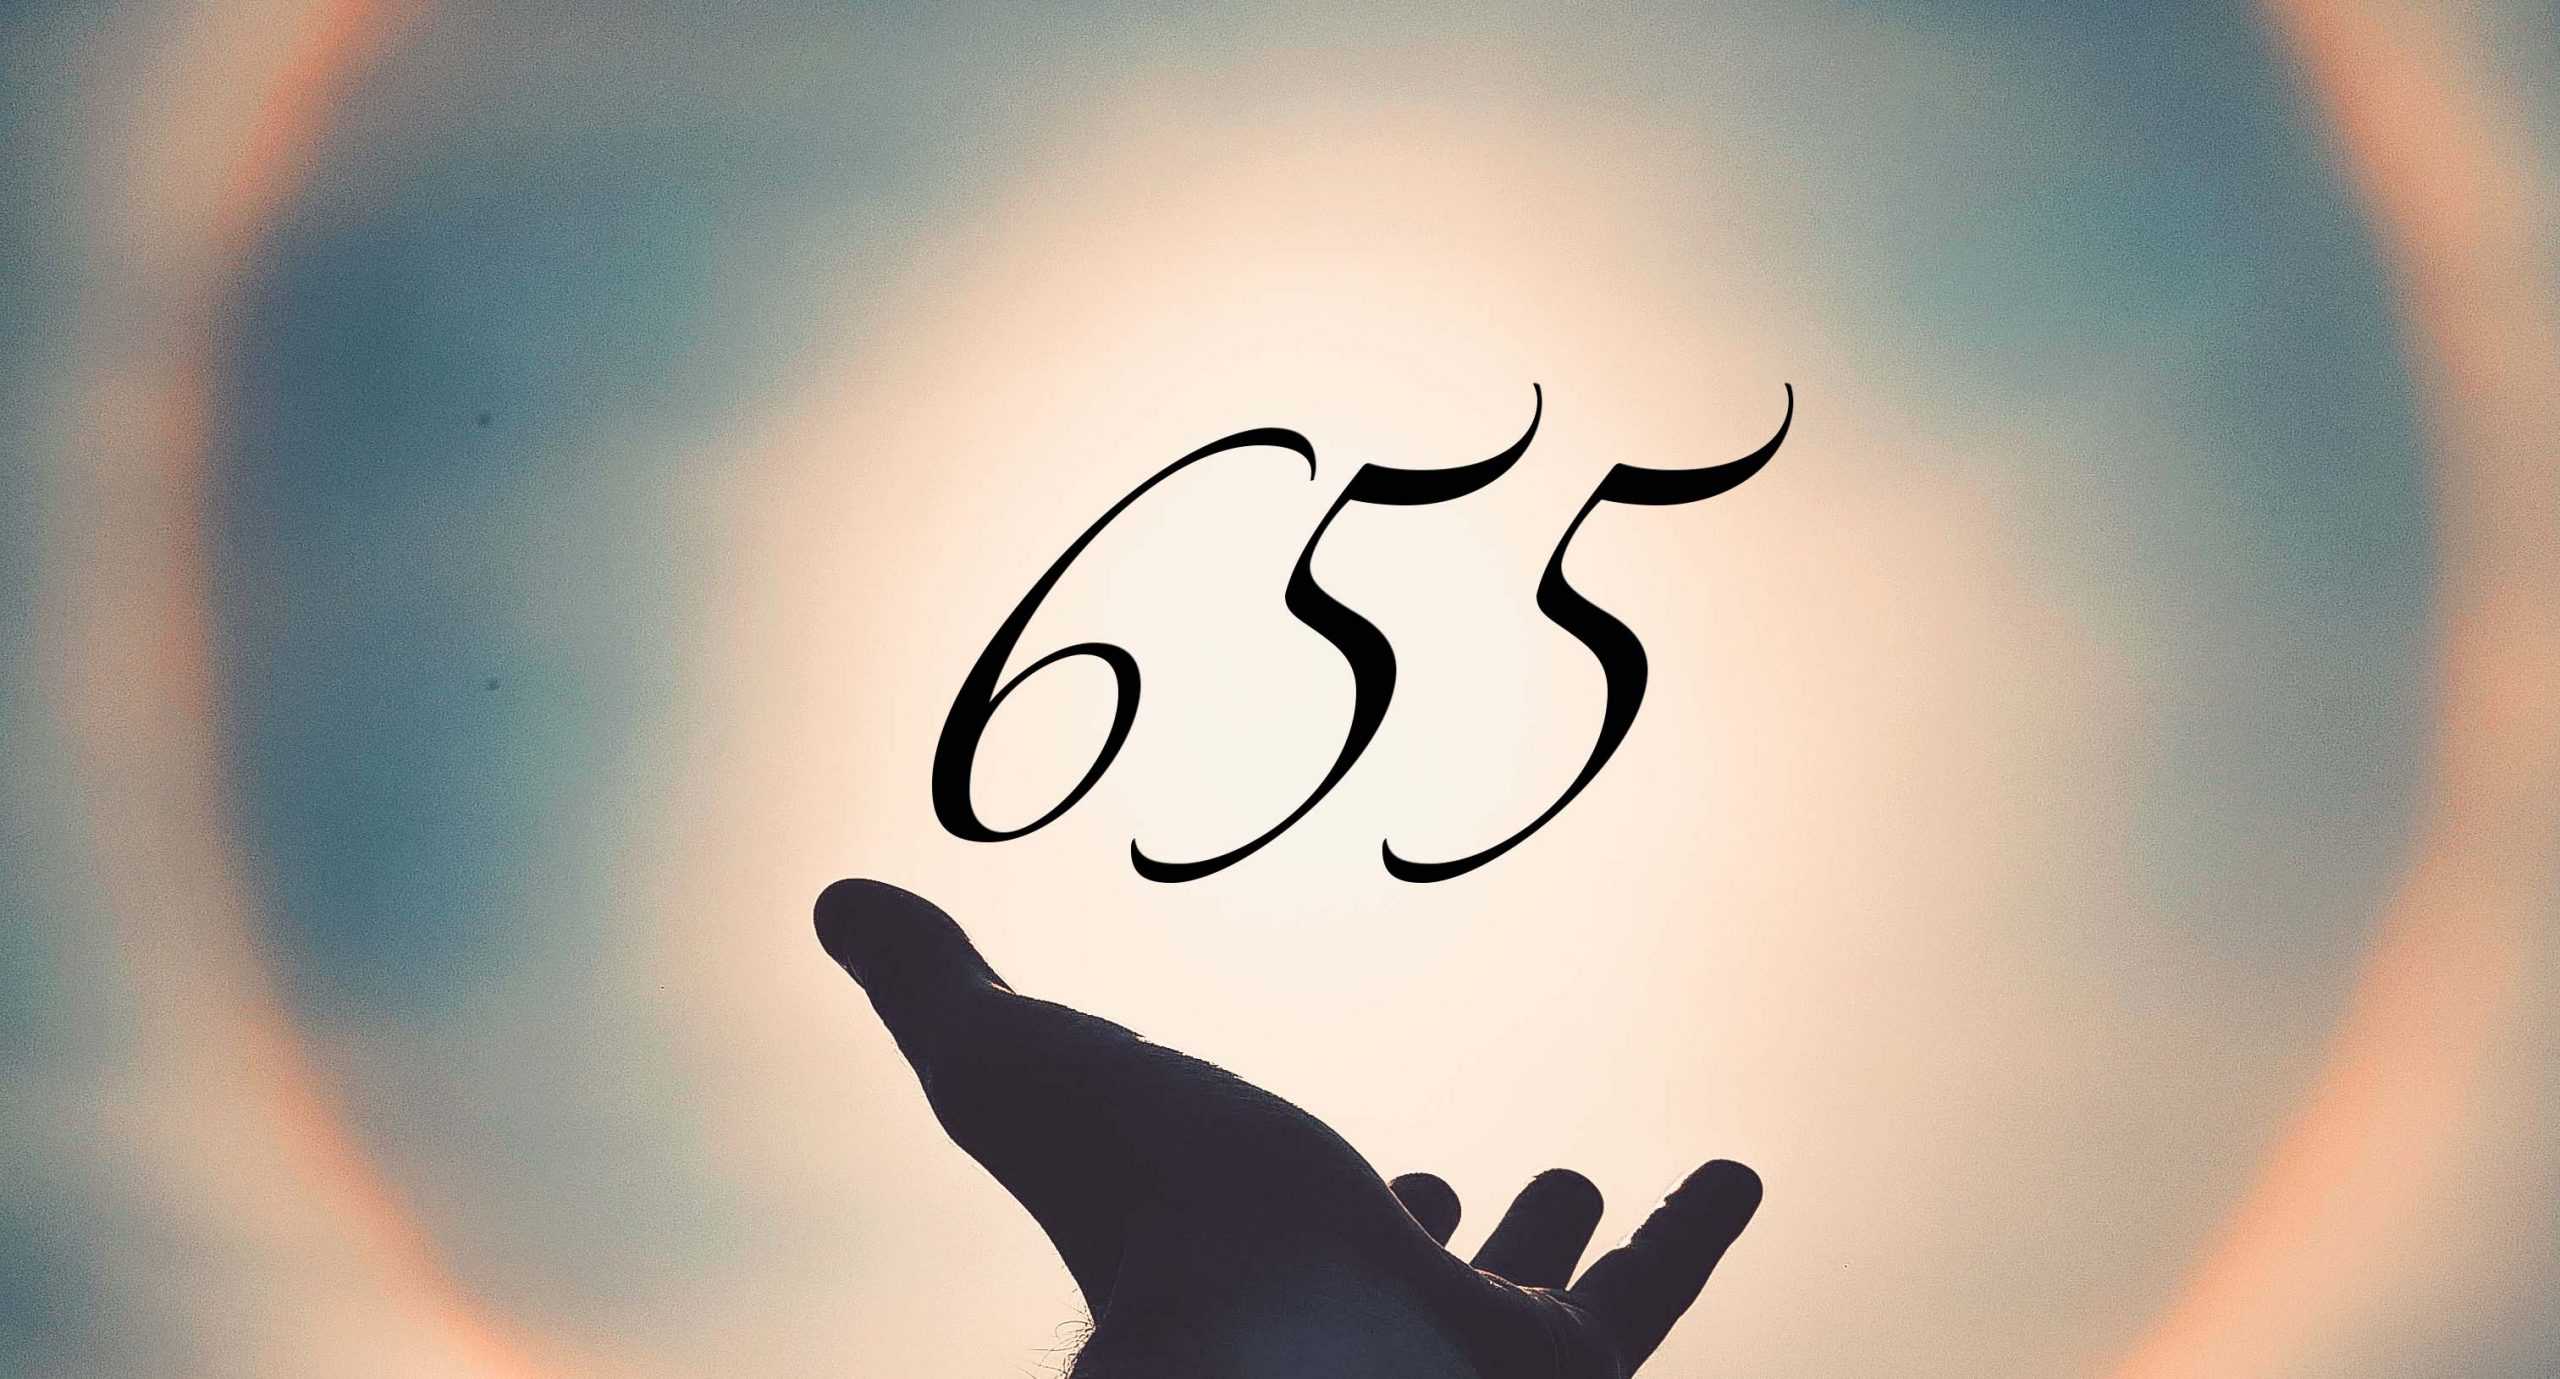 Signification du nombre 655